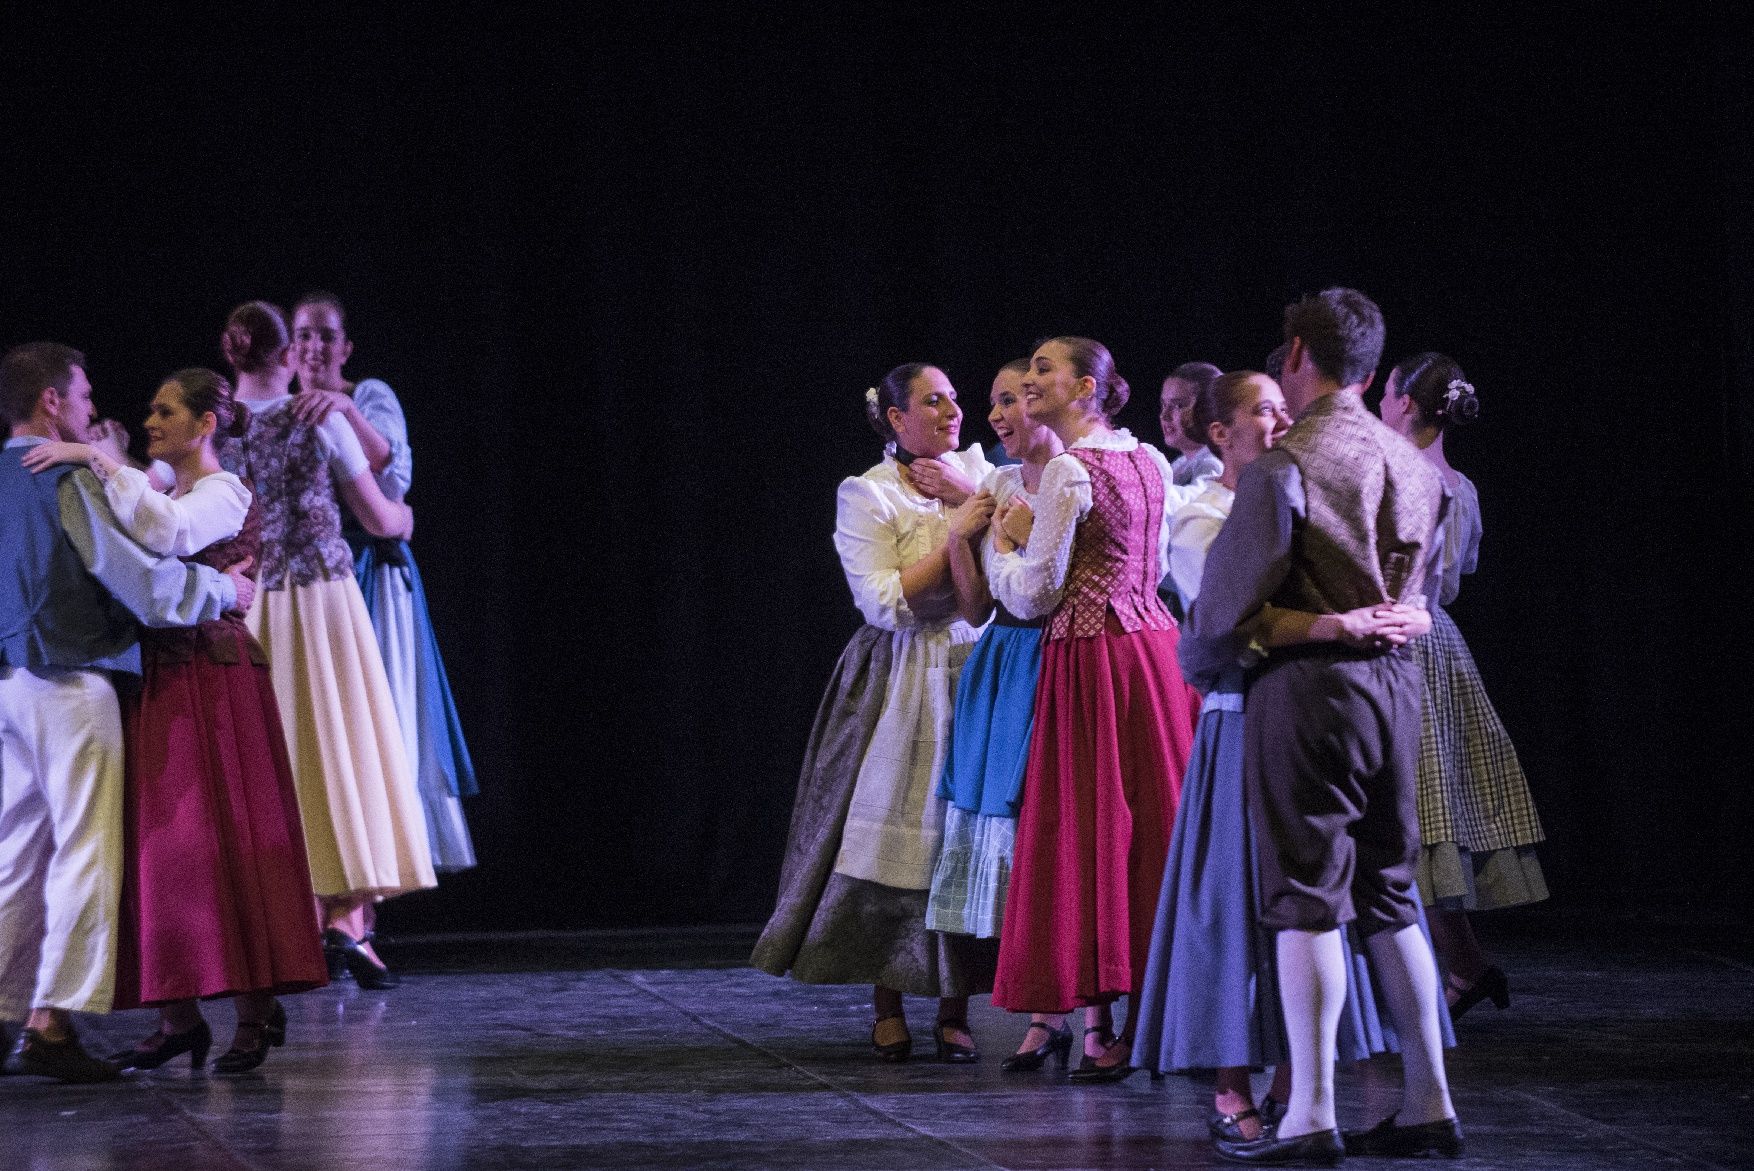 Les imatges de l'espectacle «L'hostal de l'oreneta» del Casal Cultural Dansaires